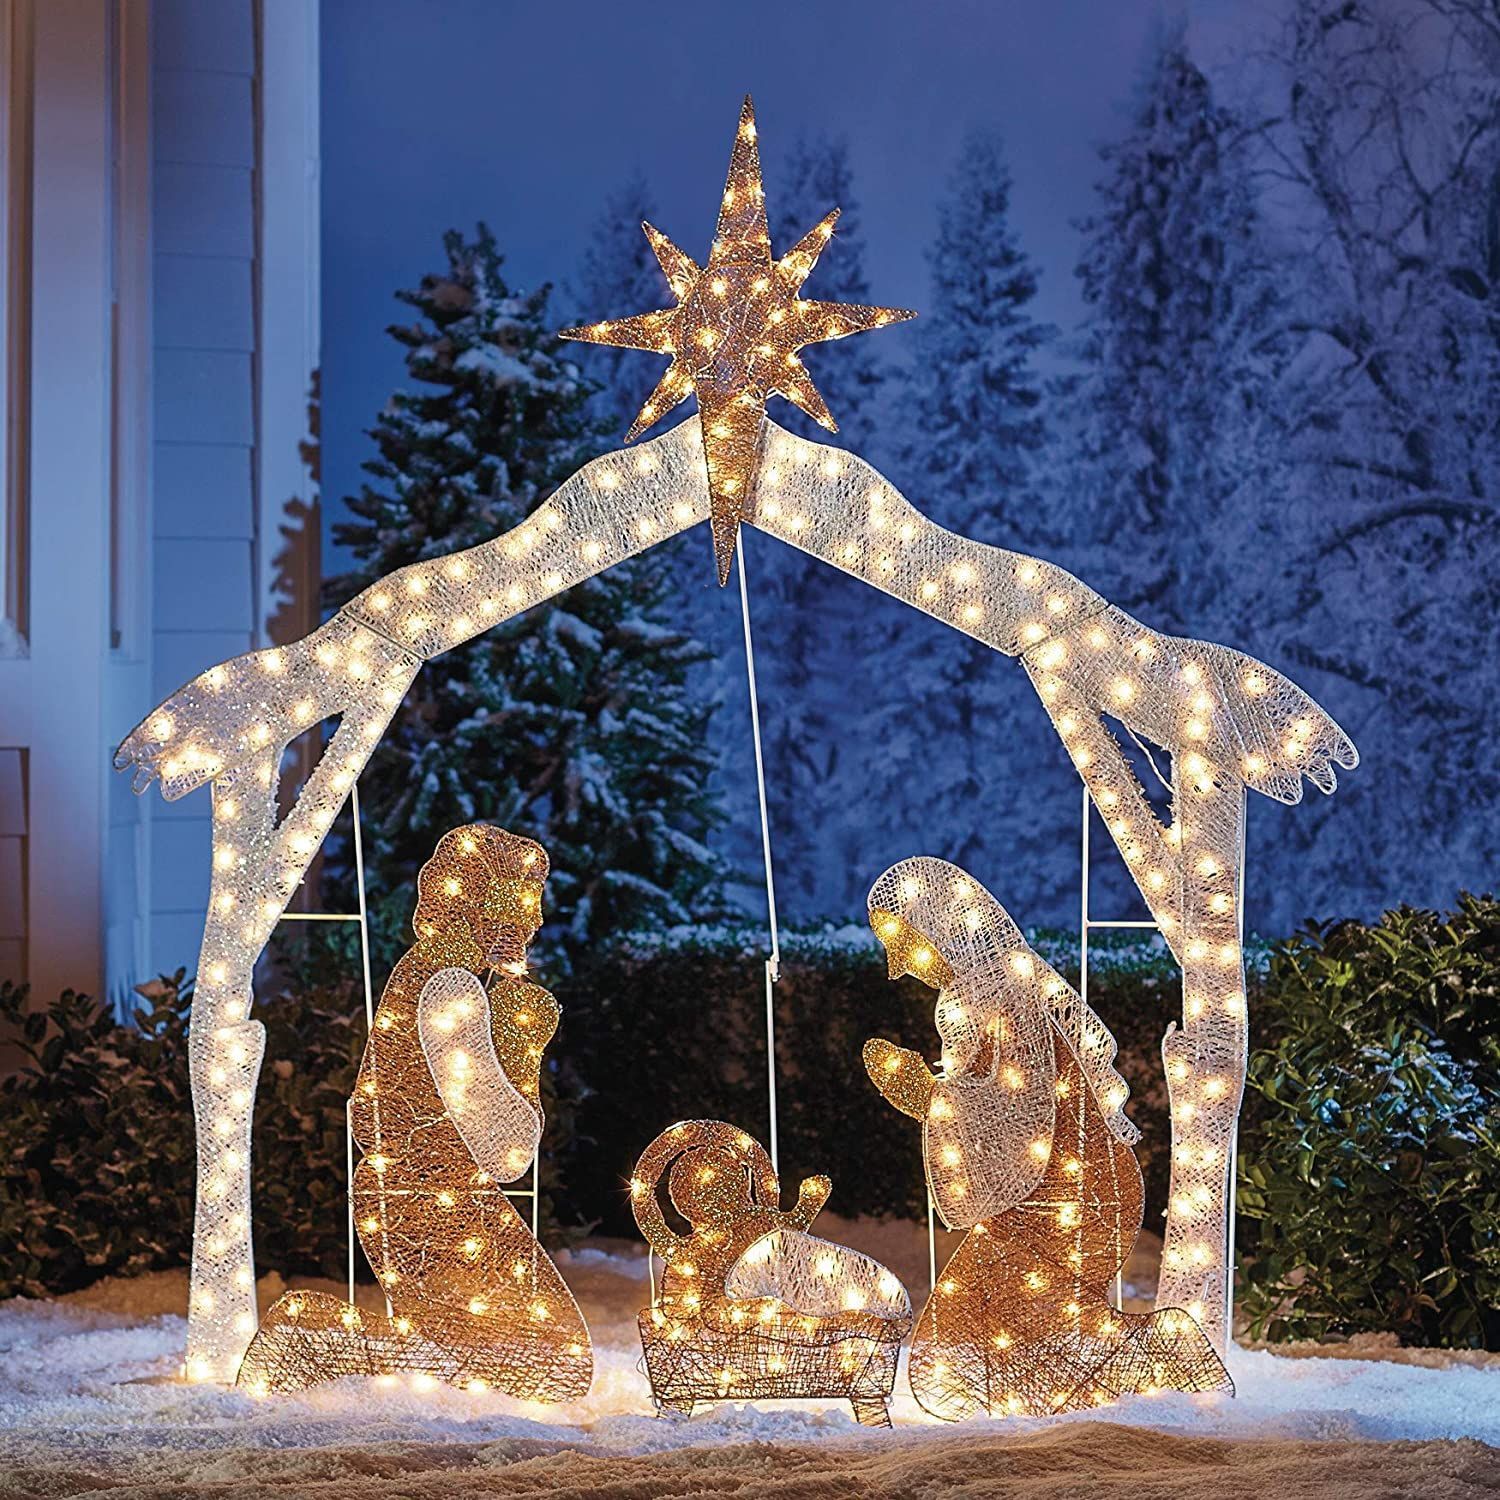 42 Best Christmas Nativity Sets 2020 Indoor Outdoor Nativity Scenes